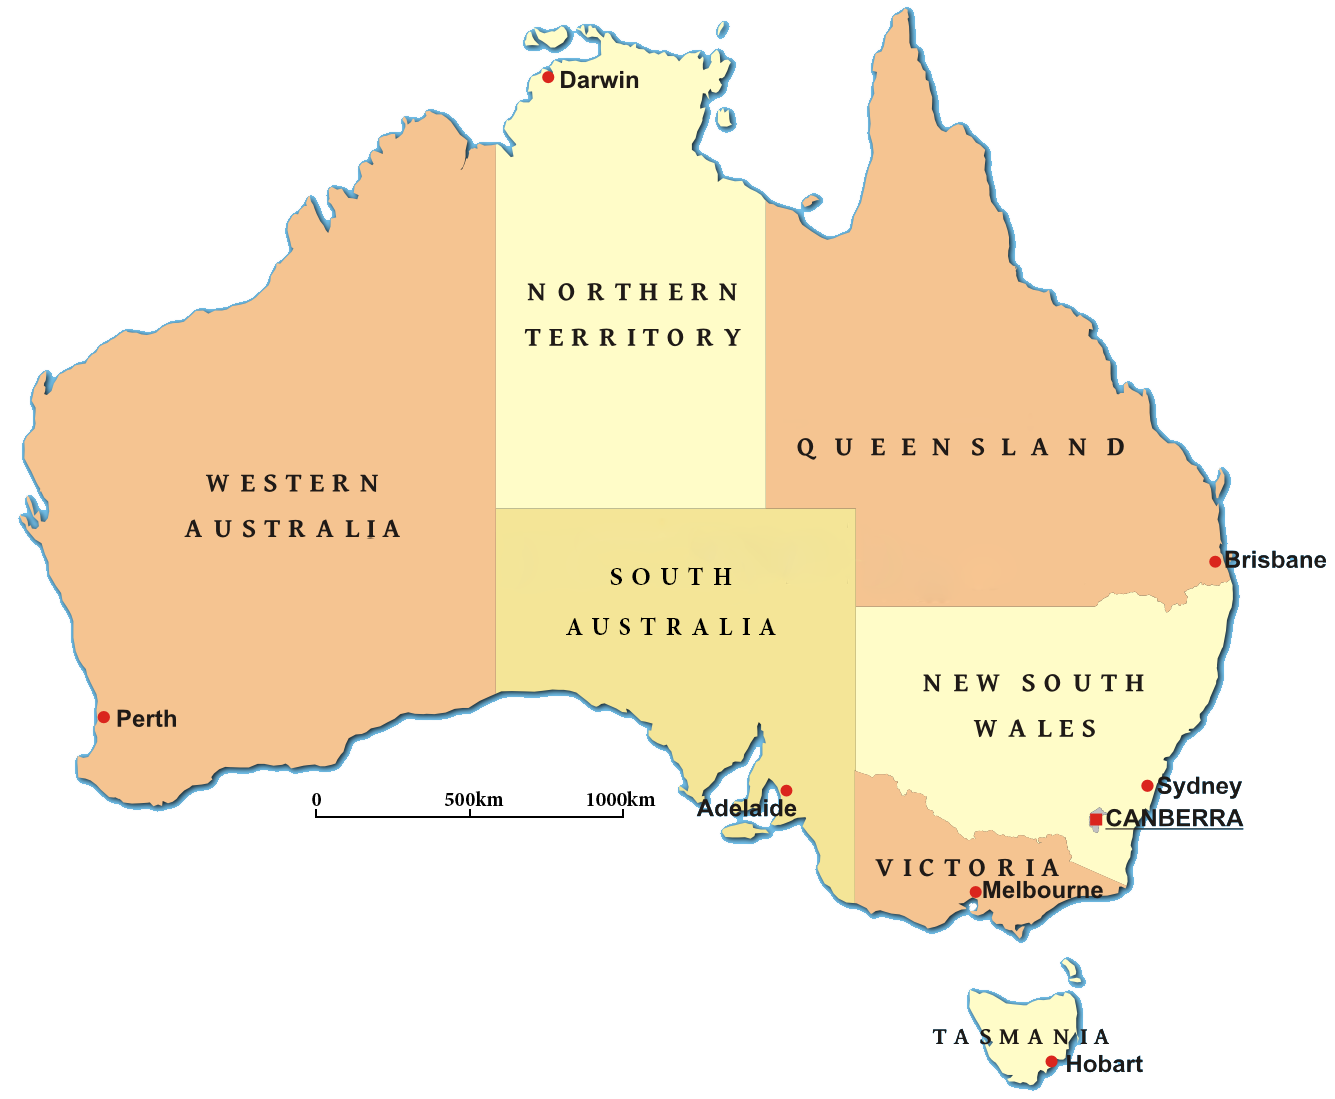 Гп австралийского союза. Административно-территориальное деление Австралии карта. Административно-территориальное деление Австралии. Разделение Австралии на штаты. Столица австралийского Союза на карте Австралии.